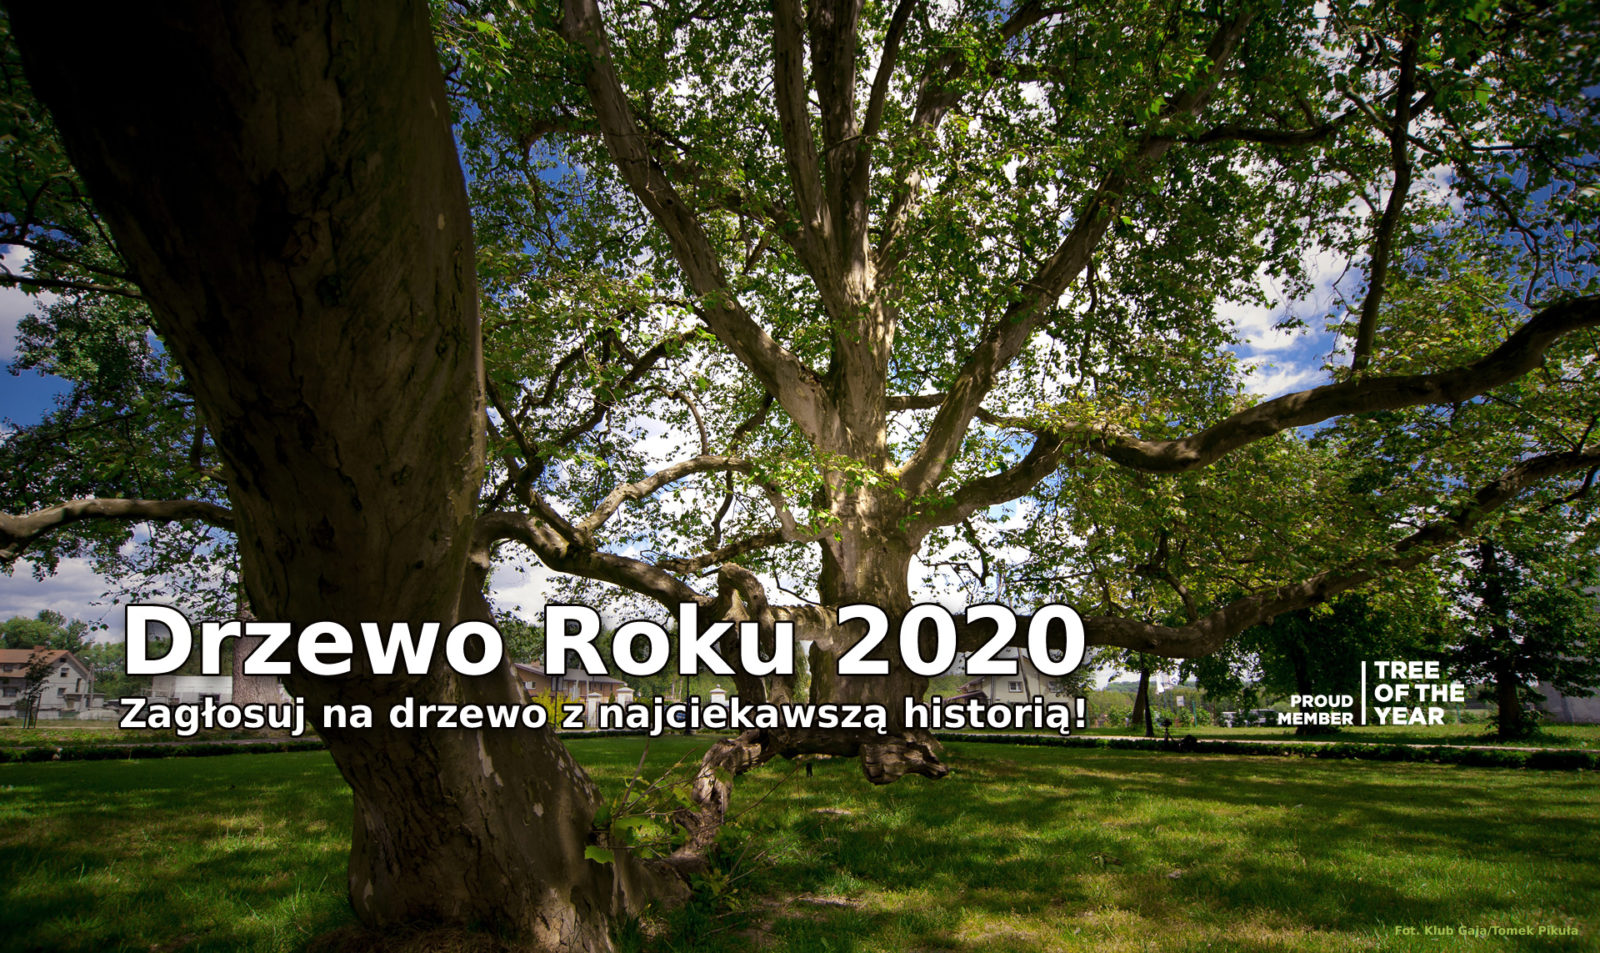 Zagłosuj na przyrodę i wybierz Drzewo Roku 2020